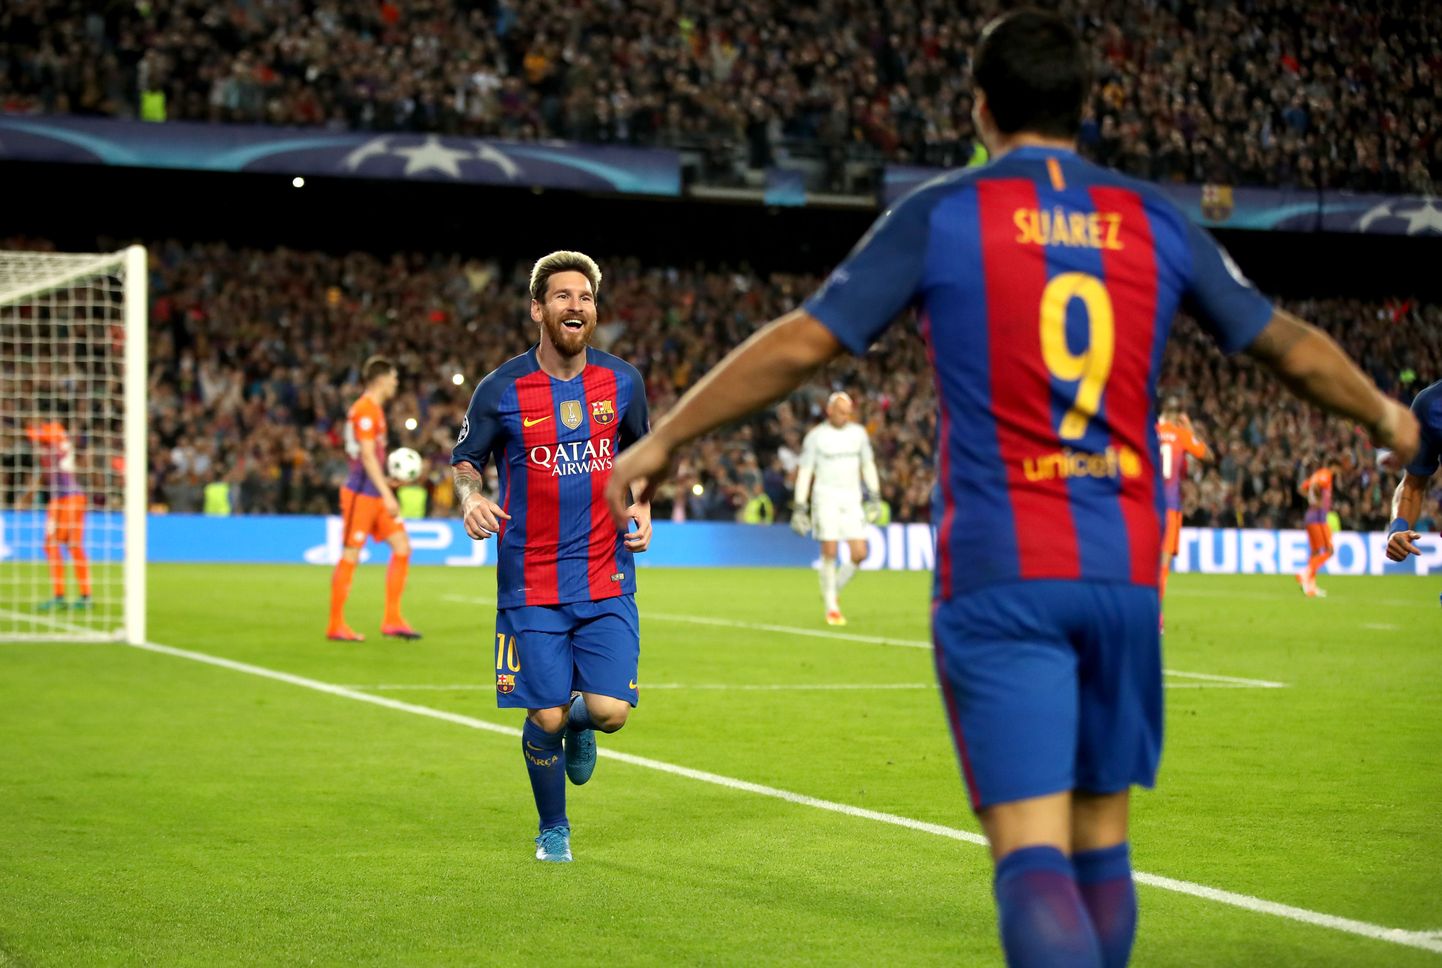 Barcelona ründekolmiku liige Lionel Messi lõi Cityle kolm väravat, millest ühe puhul andis hea söödu kolmiku teine liige Luis Suarez. Ründetrio kolmas mees Neymar oli samuti resultatiivne ja sai kirja ühe tabamuse.